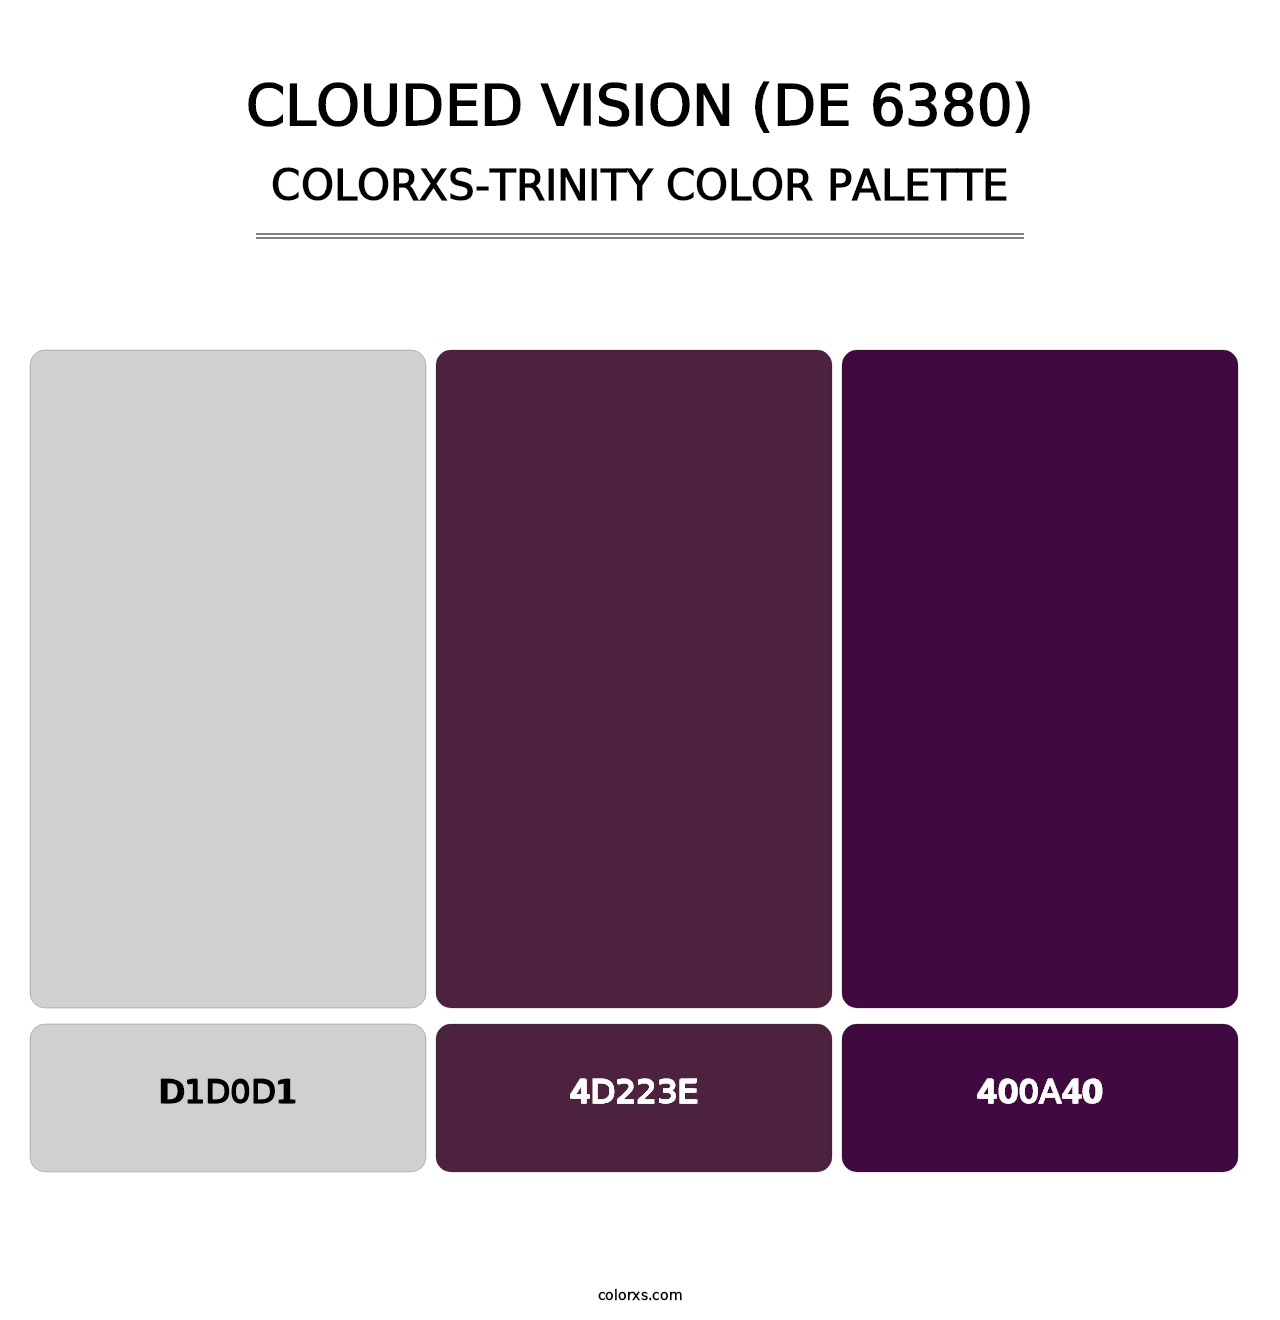 Clouded Vision (DE 6380) - Colorxs Trinity Palette